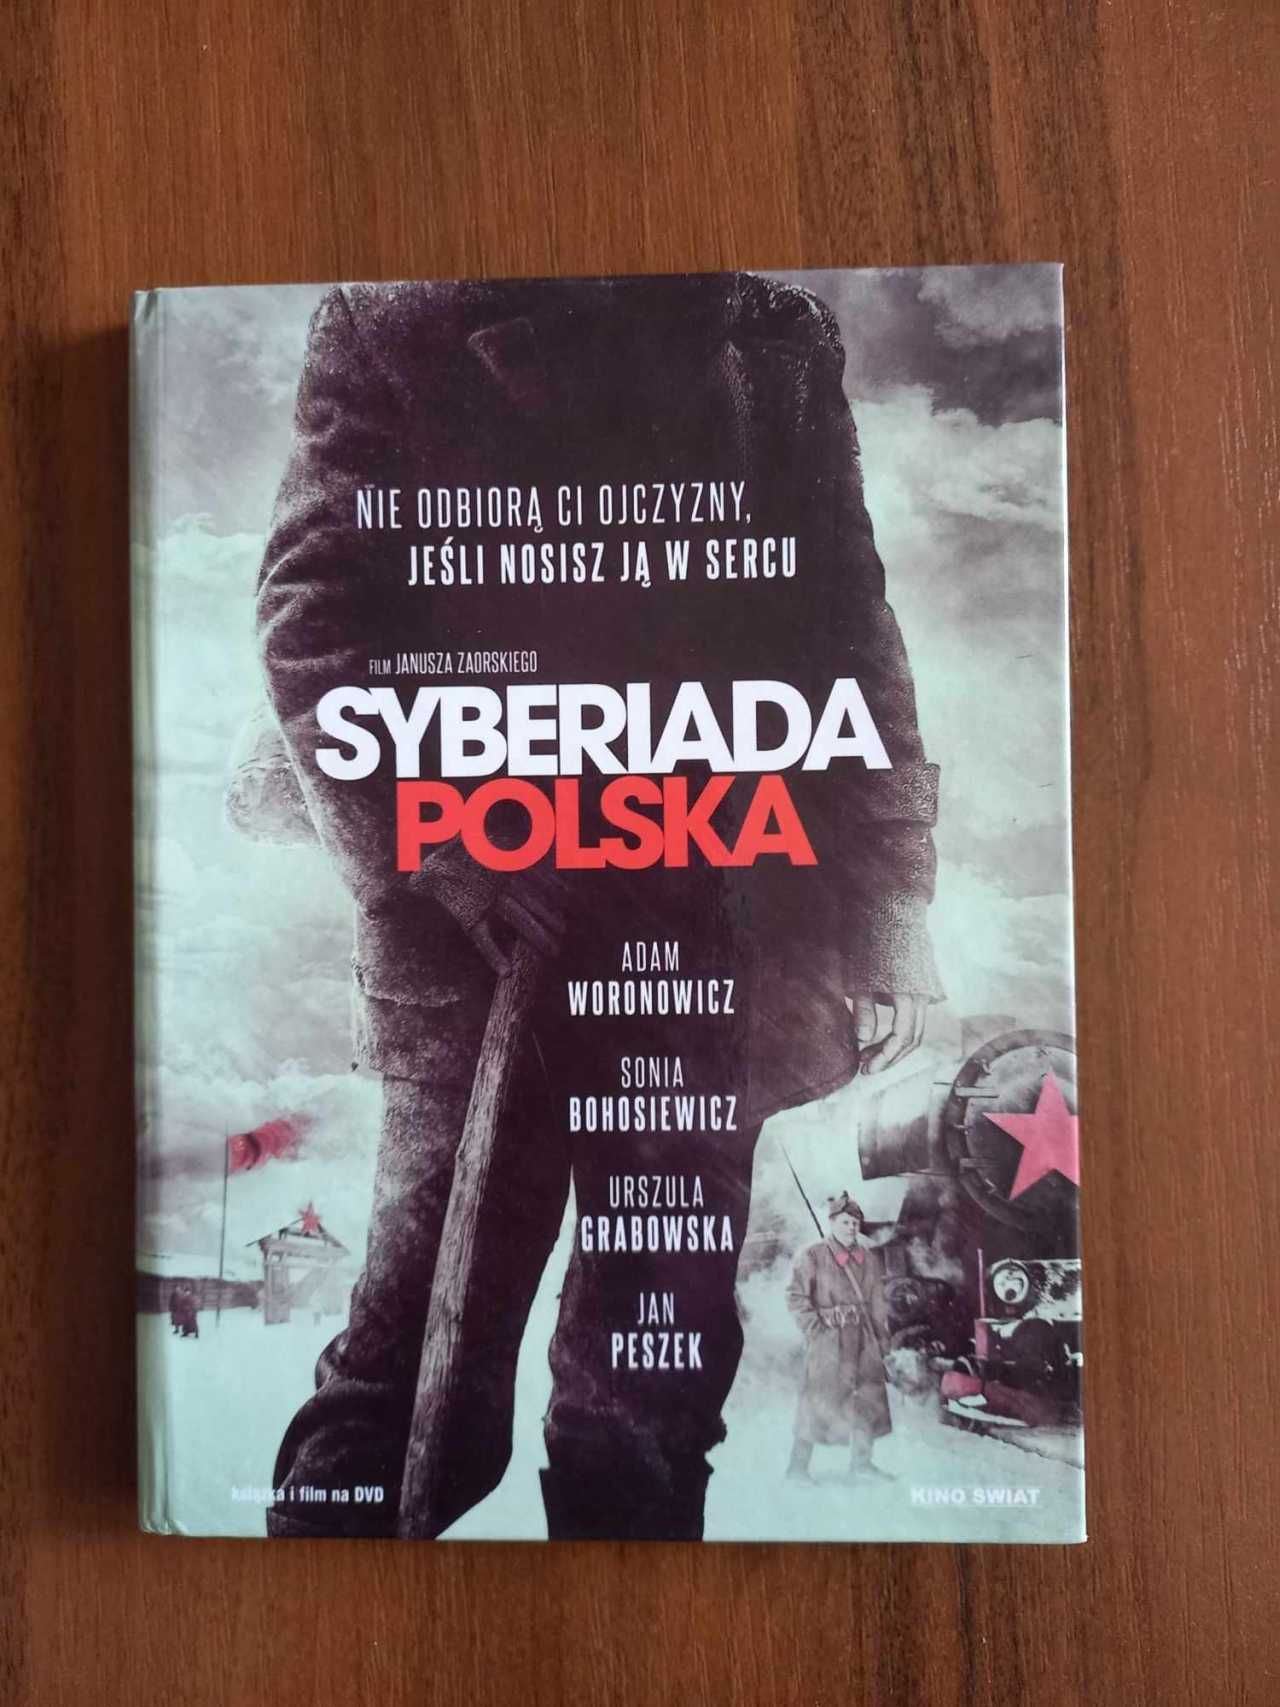 Płyta DVD z filmem Syberiada polska streszczenie , główne postaci .